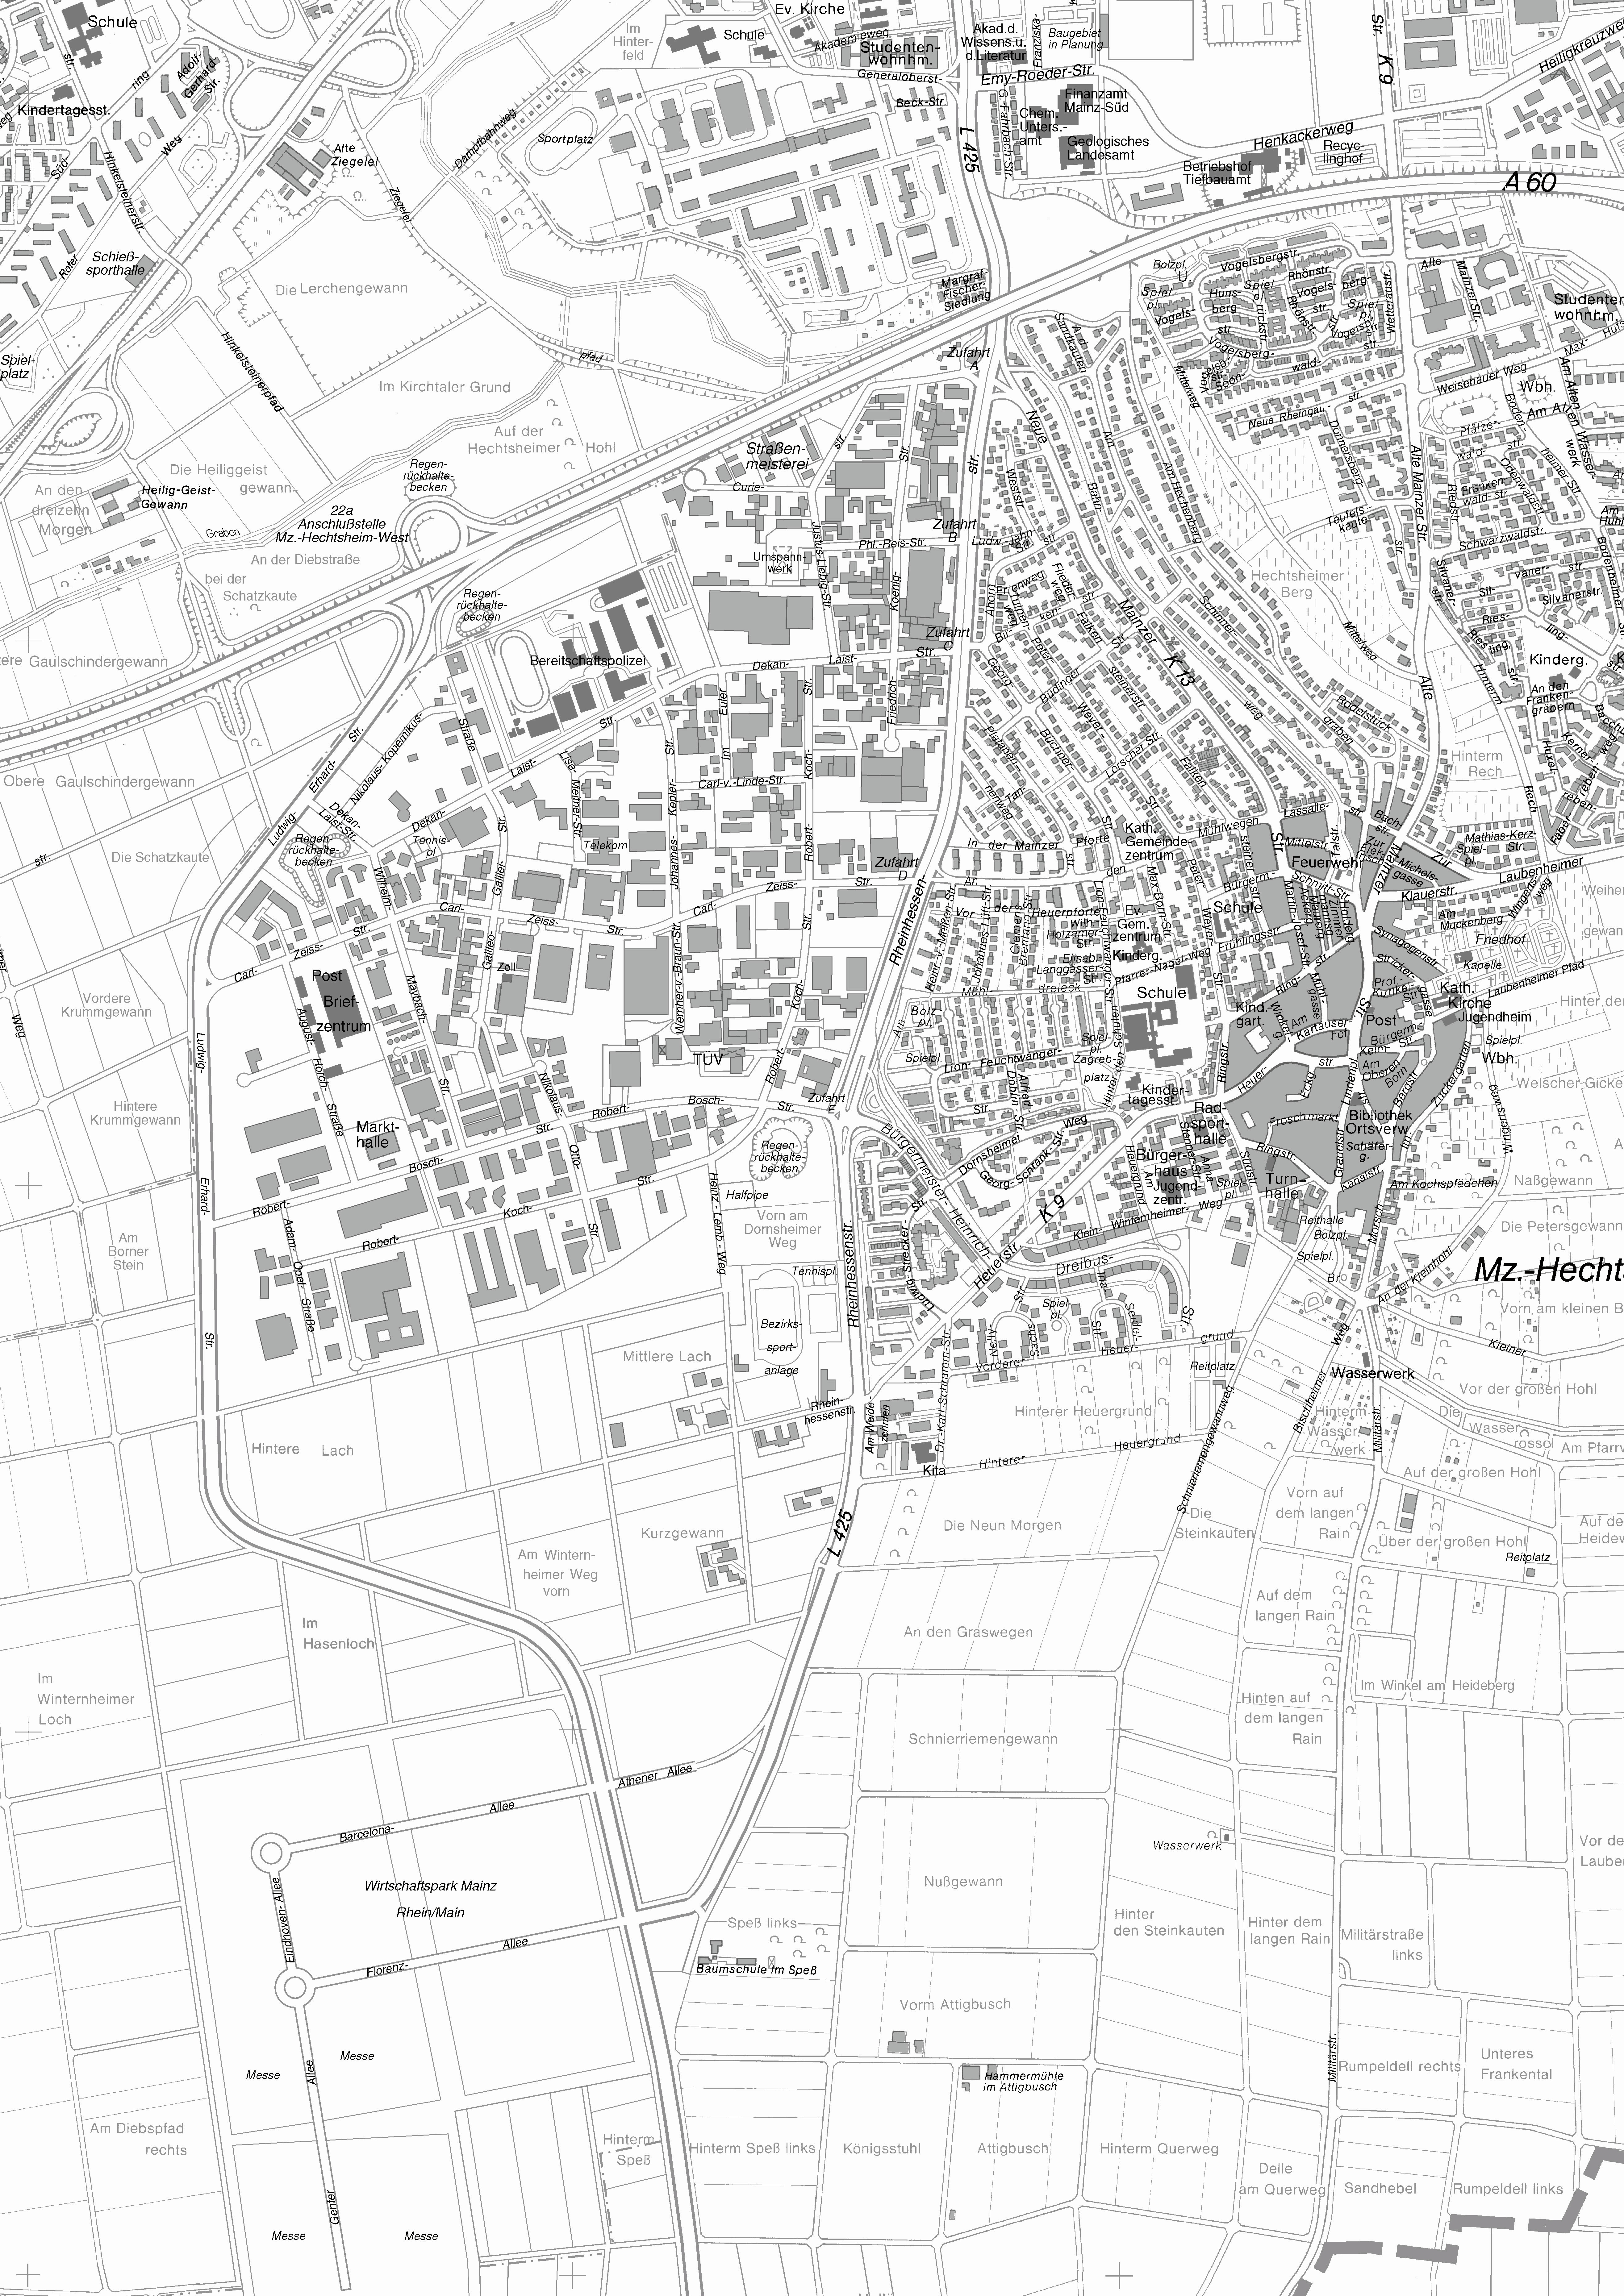 Bild: „Vergrößerung des amtlichen Ortsplan Hechtsheim der Landeshauptstadt Mainz mit Genehmigung des Vermessungsamtes, Nr. 26/05“